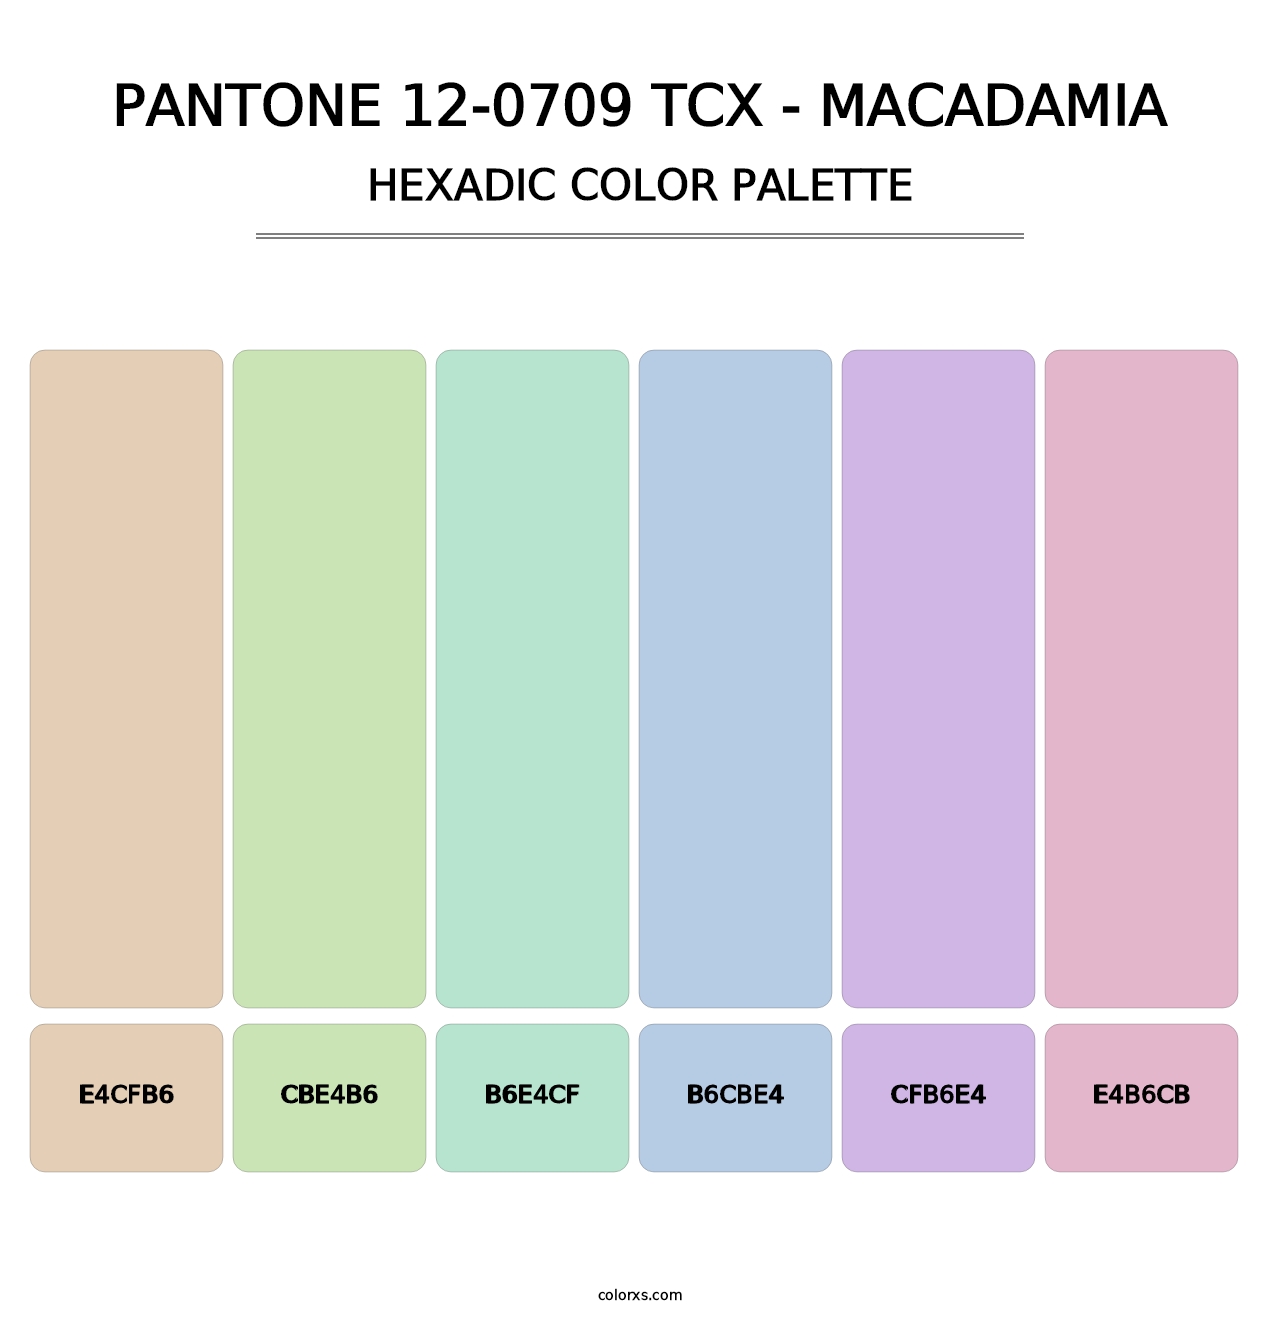 PANTONE 12-0709 TCX - Macadamia - Hexadic Color Palette